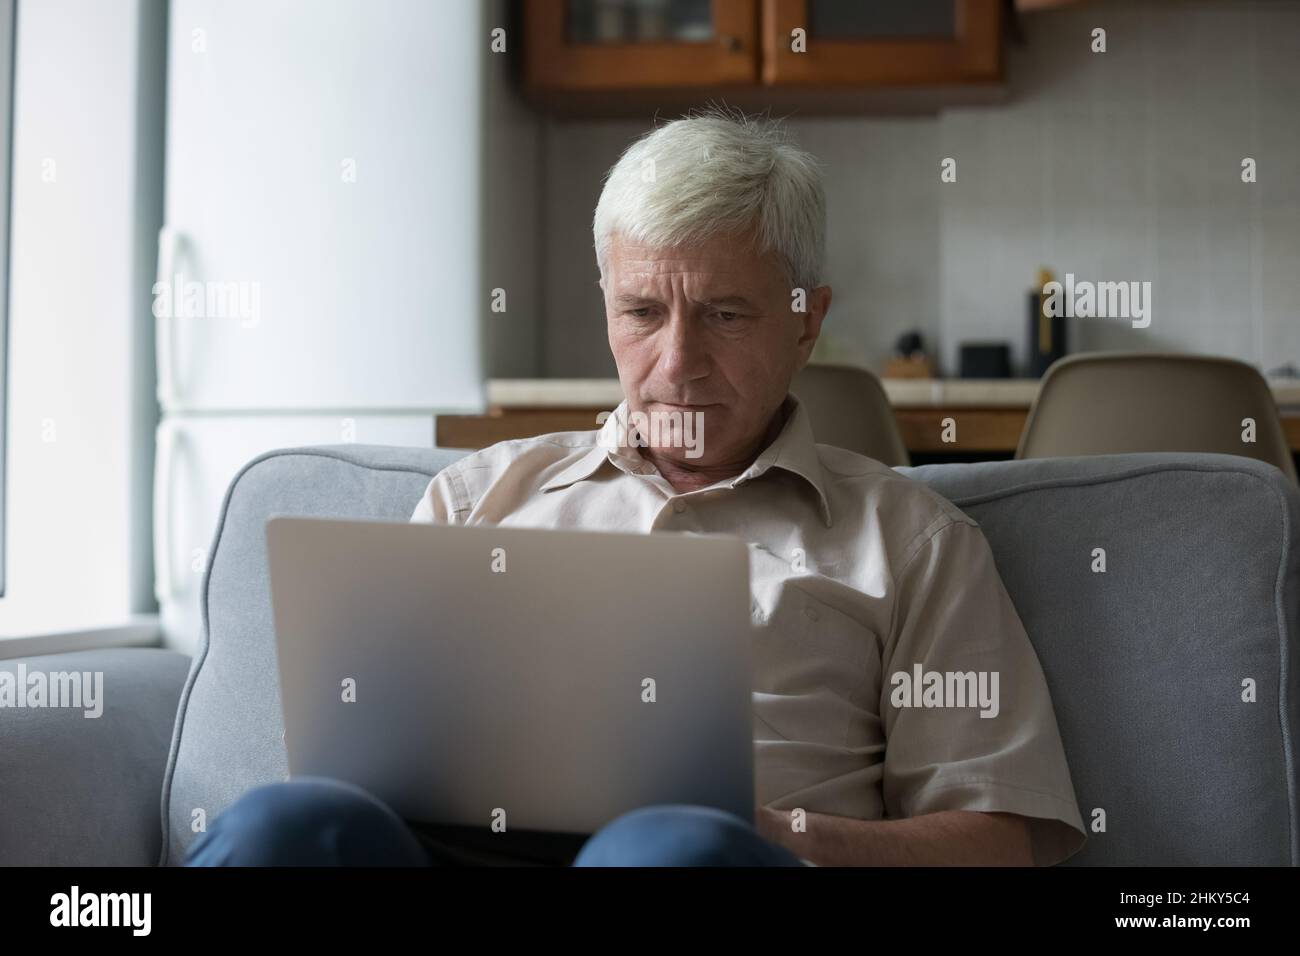 Utilisateur d'ordinateur mûr et concentré, homme reposant sur la table de traitement Banque D'Images